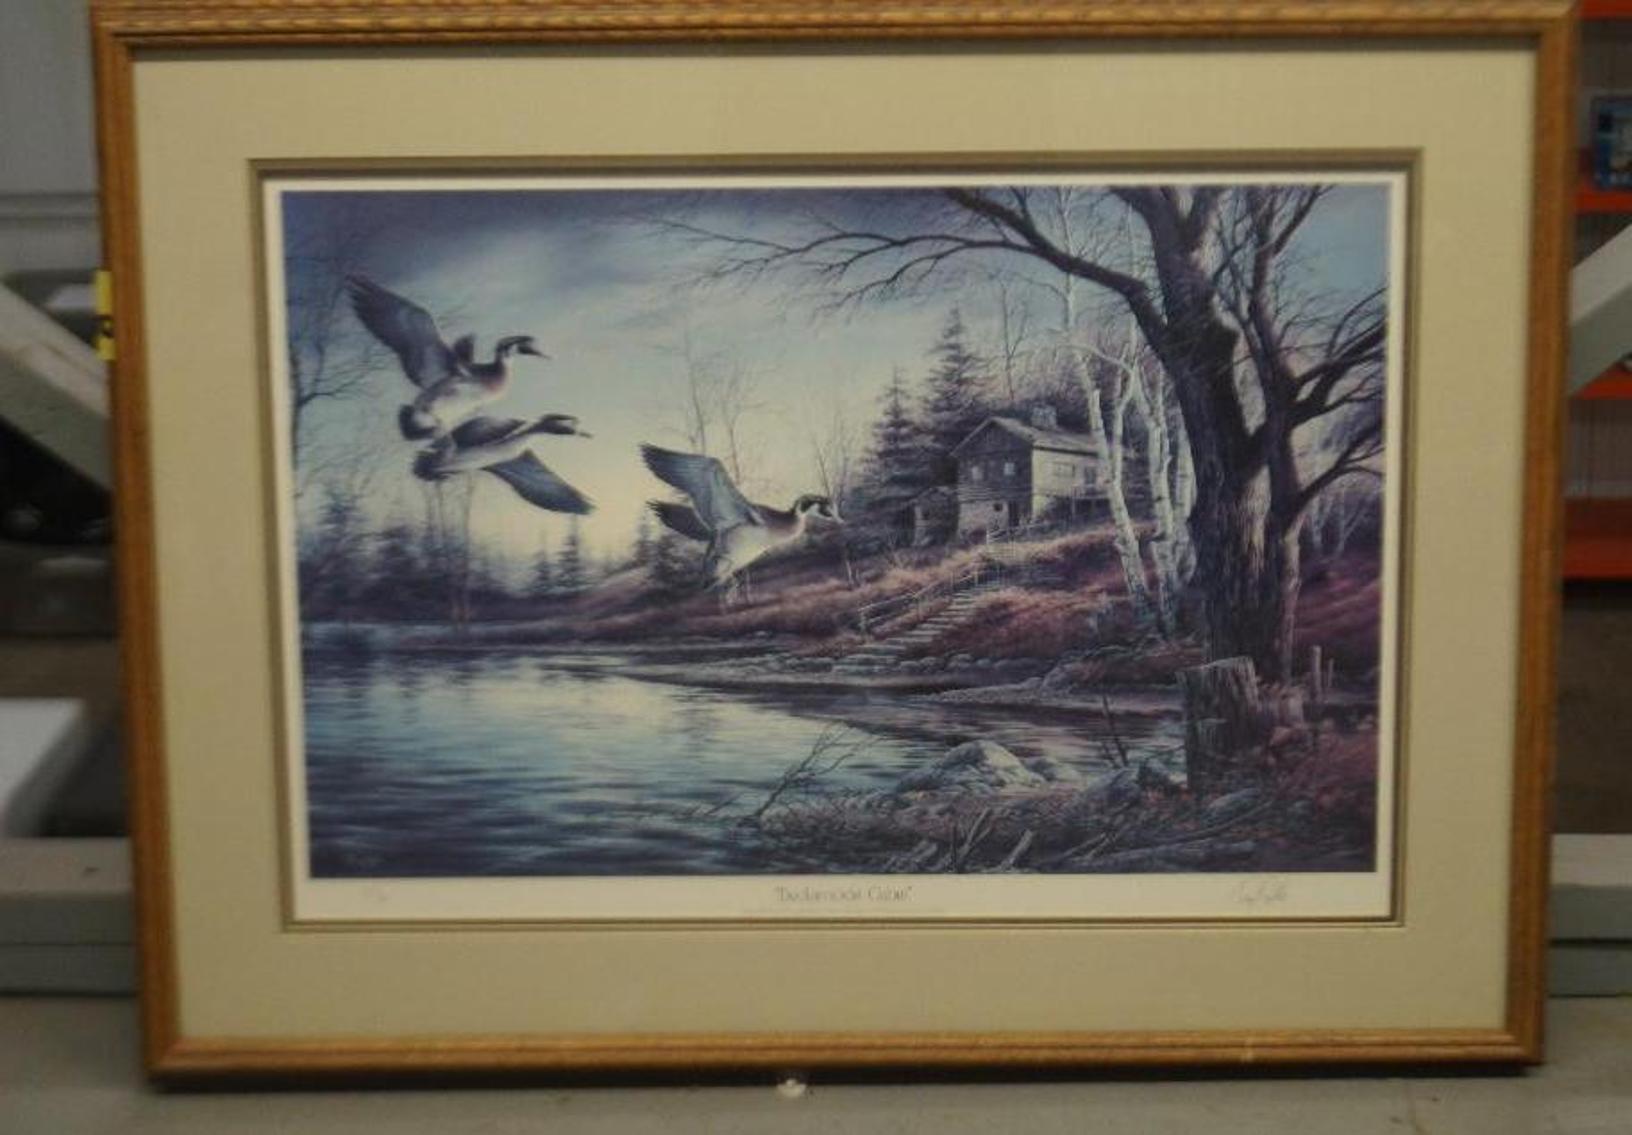 West Fargo Framed Art Auction